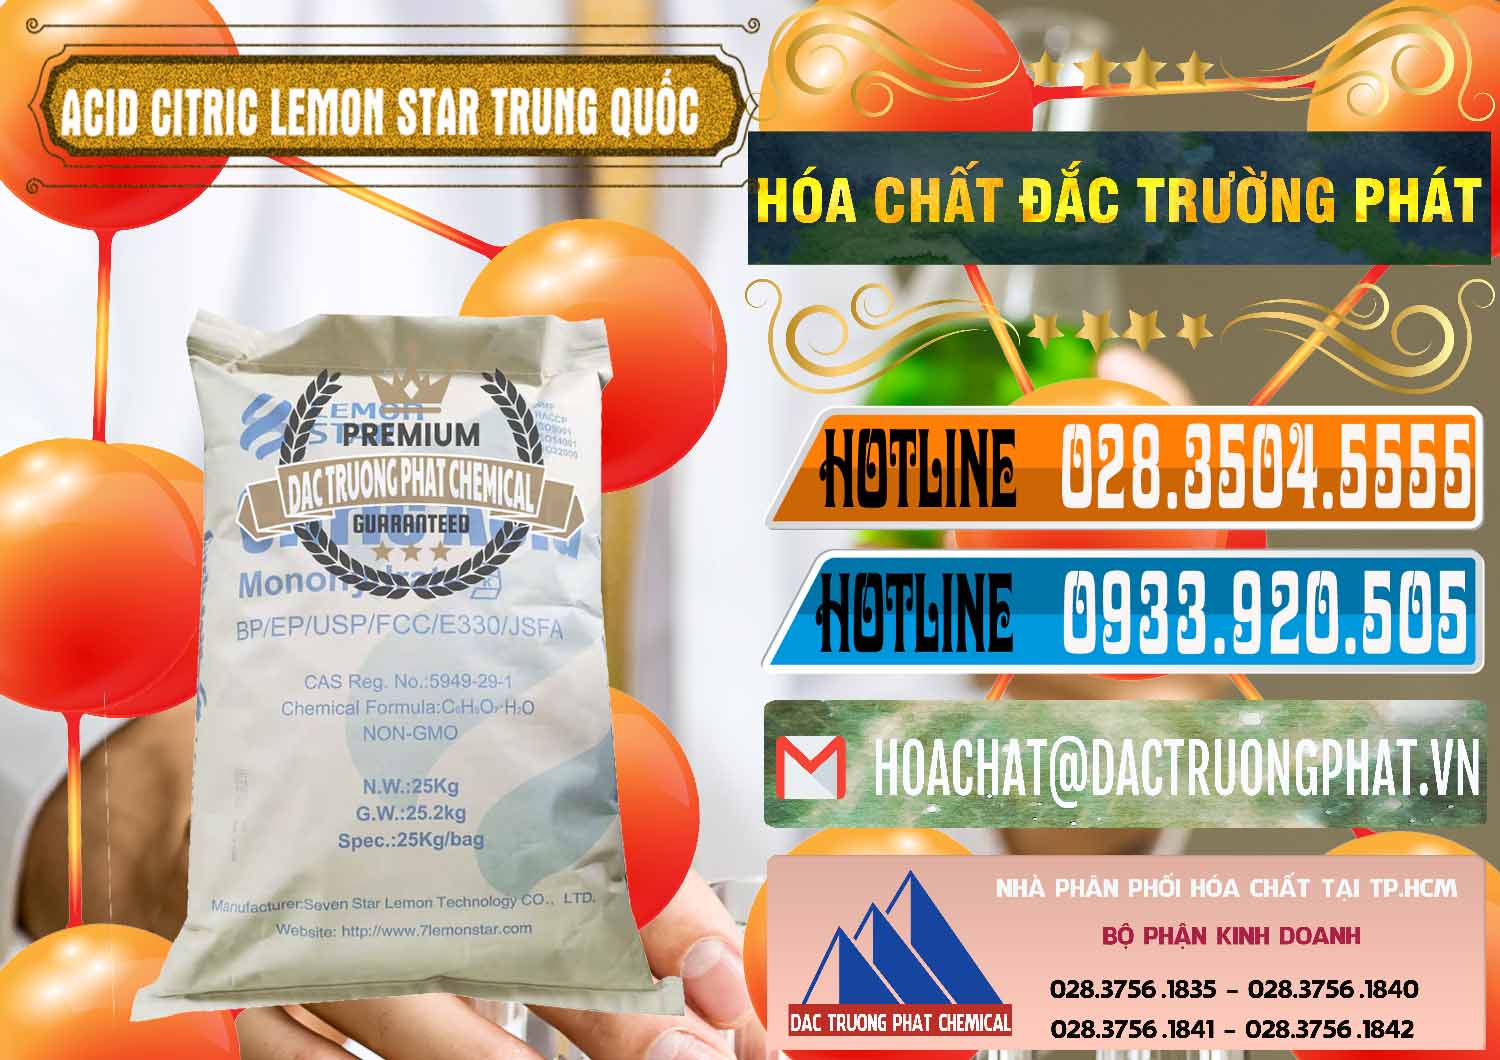 Nơi chuyên bán & cung ứng Acid Citric - Axit Citric BP/EP/USP/FCC/E330 Lemon Star Trung Quốc China - 0286 - Đơn vị cung cấp & kinh doanh hóa chất tại TP.HCM - stmp.net